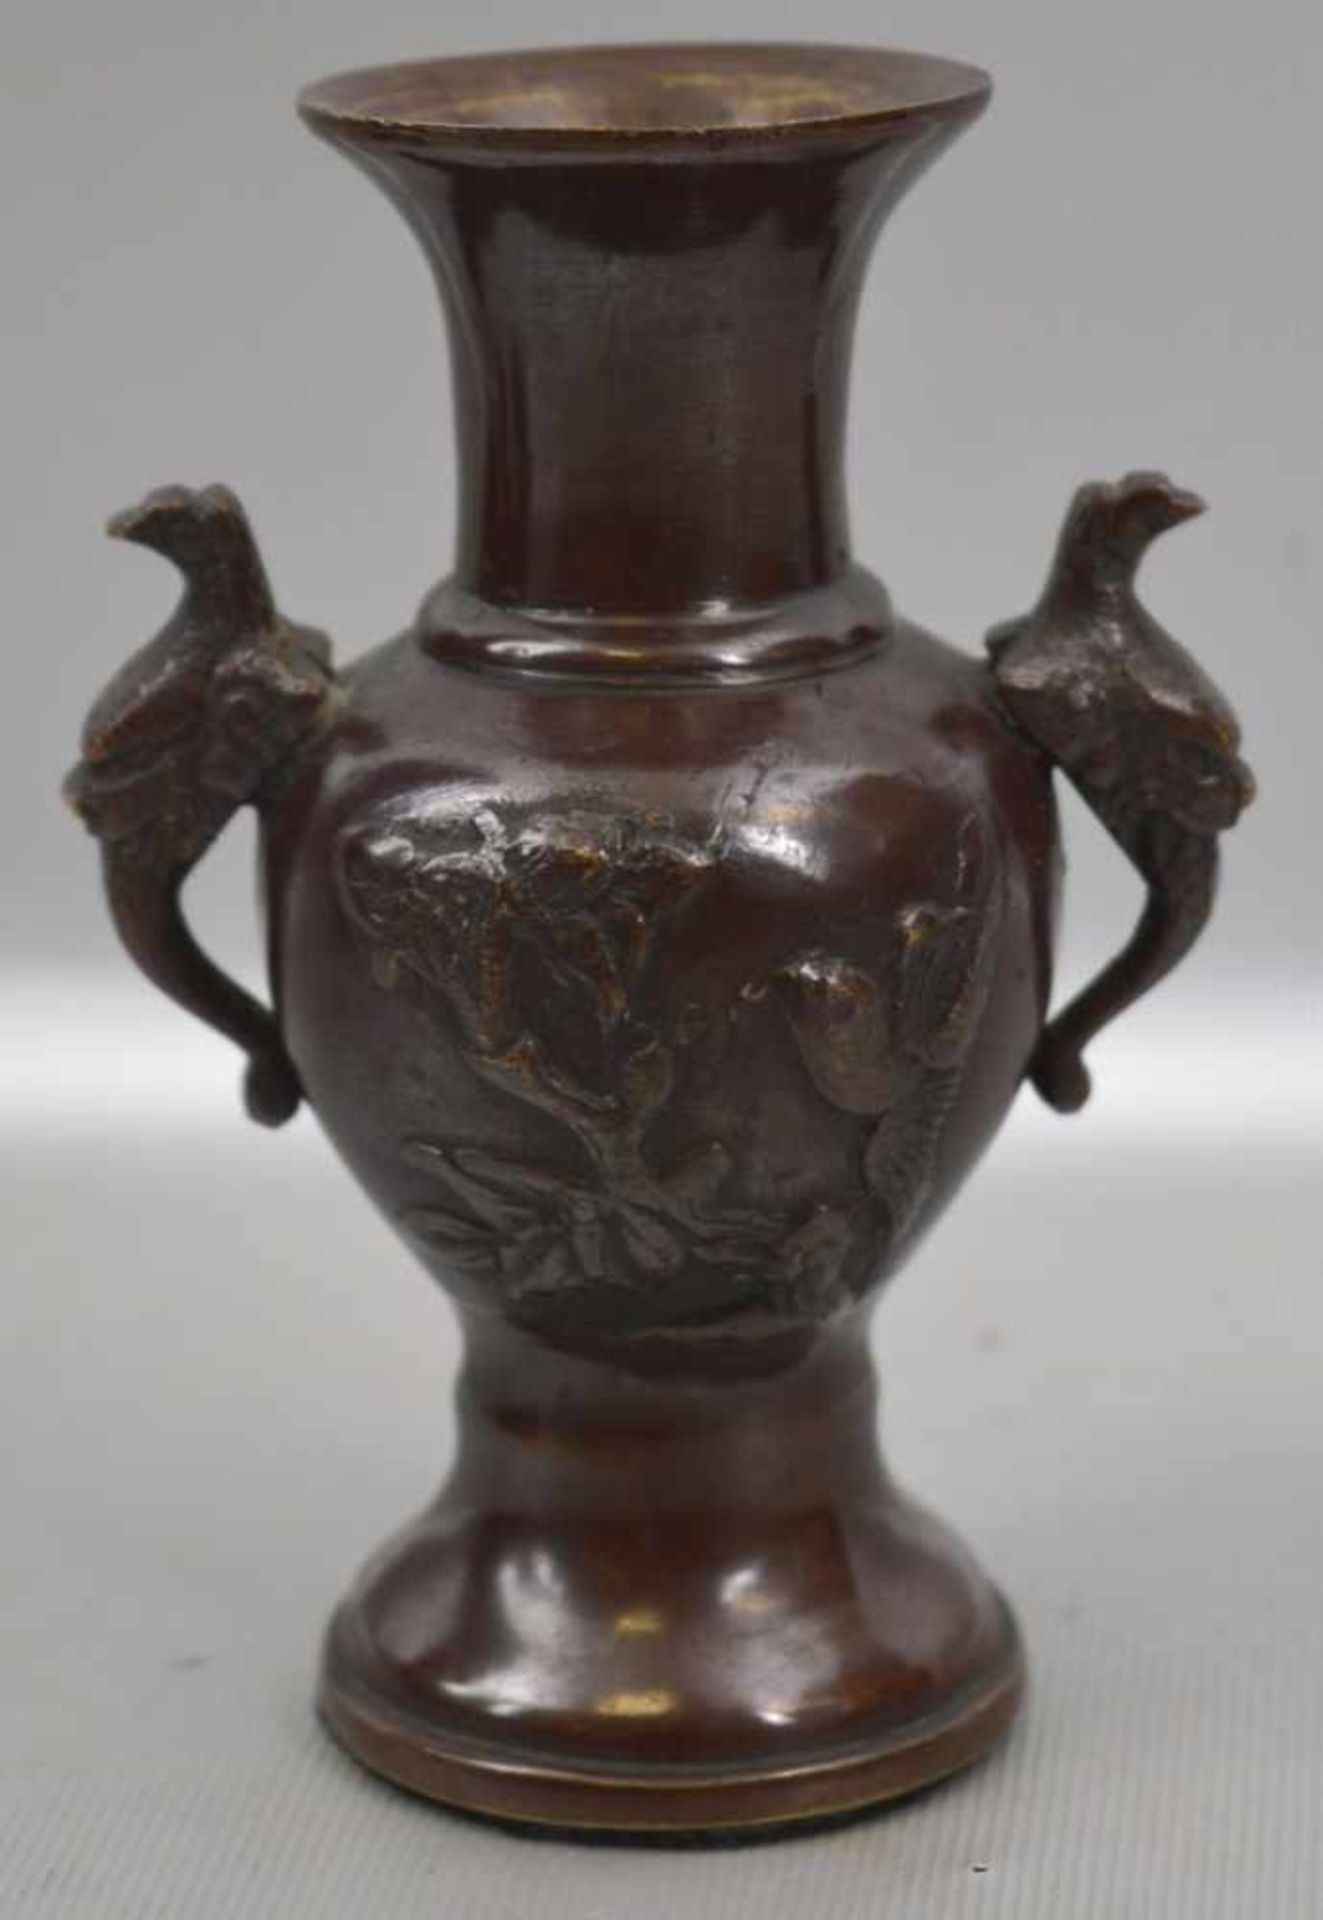 Vase Bronze, runder Fuß, verzierte Wandung, zwei mit Vogelmotiven verzierte Griffe, H 12 cm, um